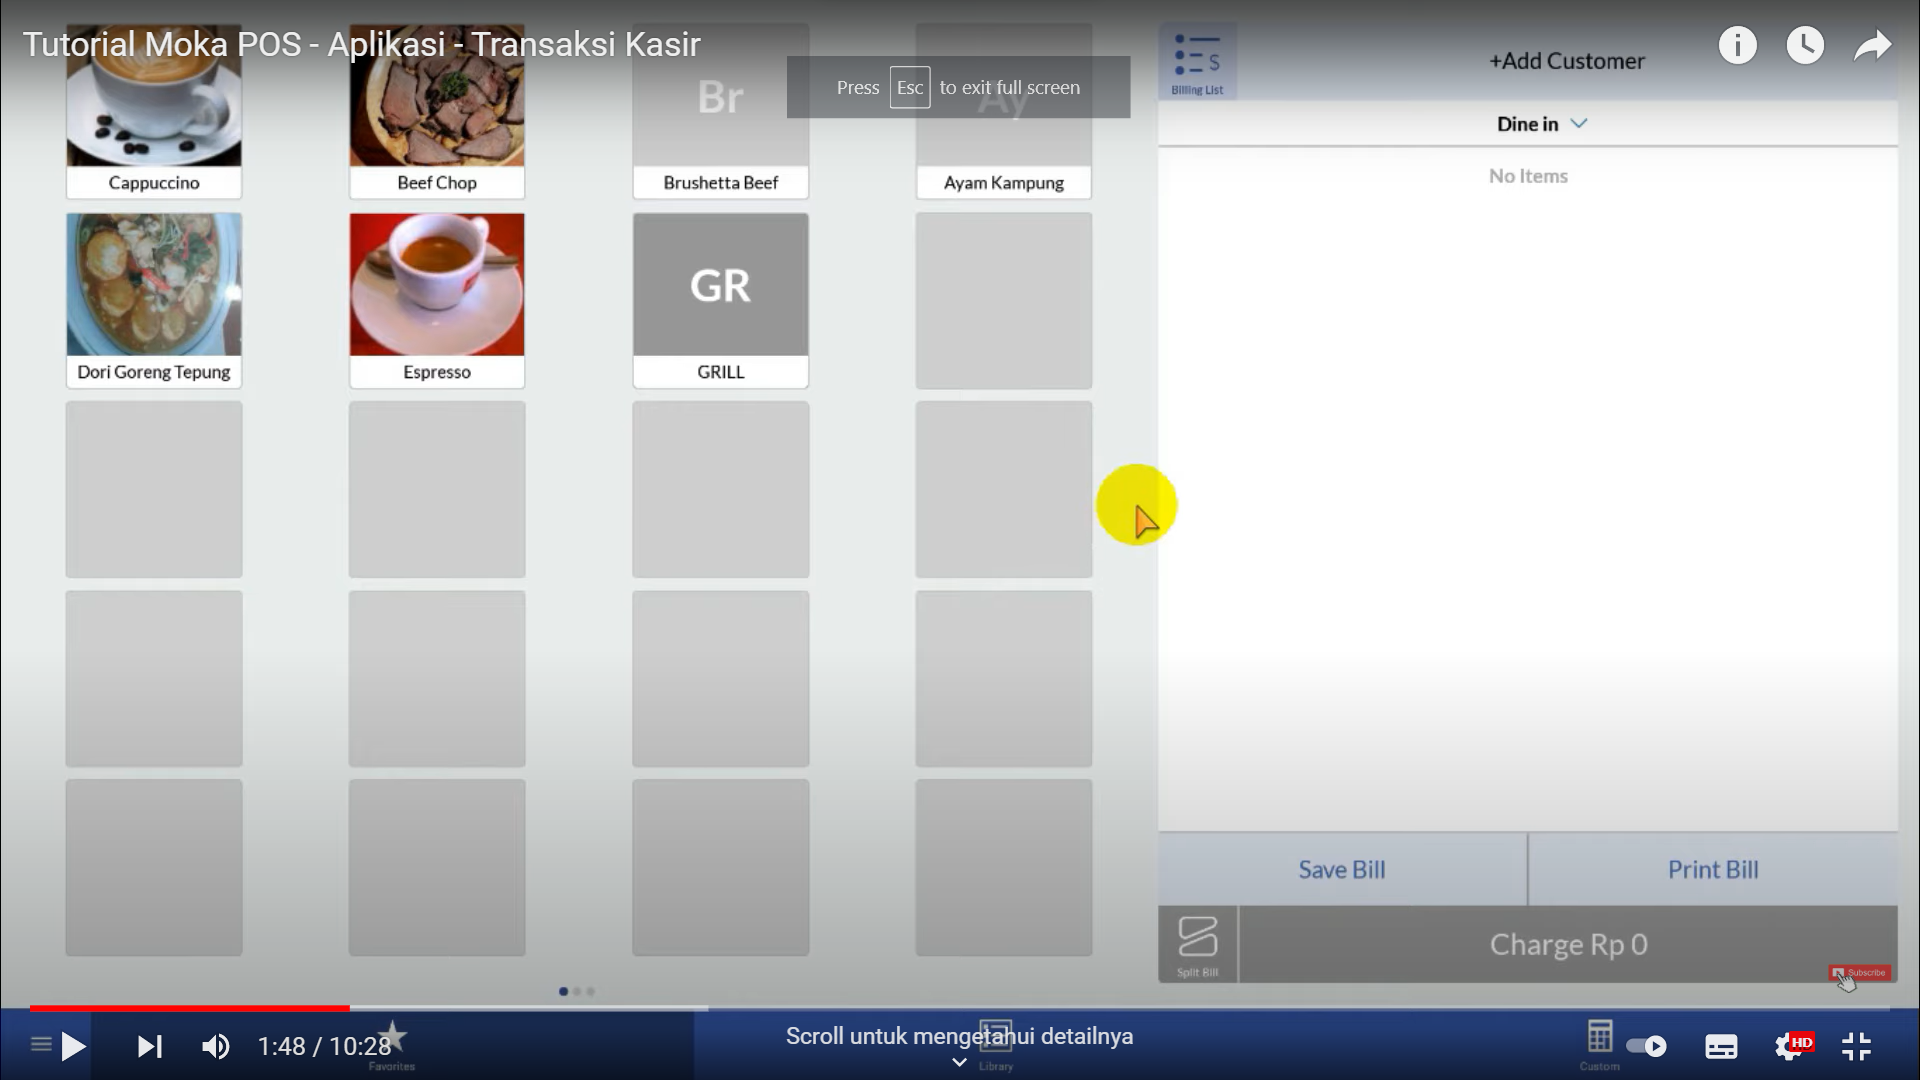 Screenshot tentang sistem MokaPOS yang menampilkan daftar produk favorit dari outlet yang dipilih